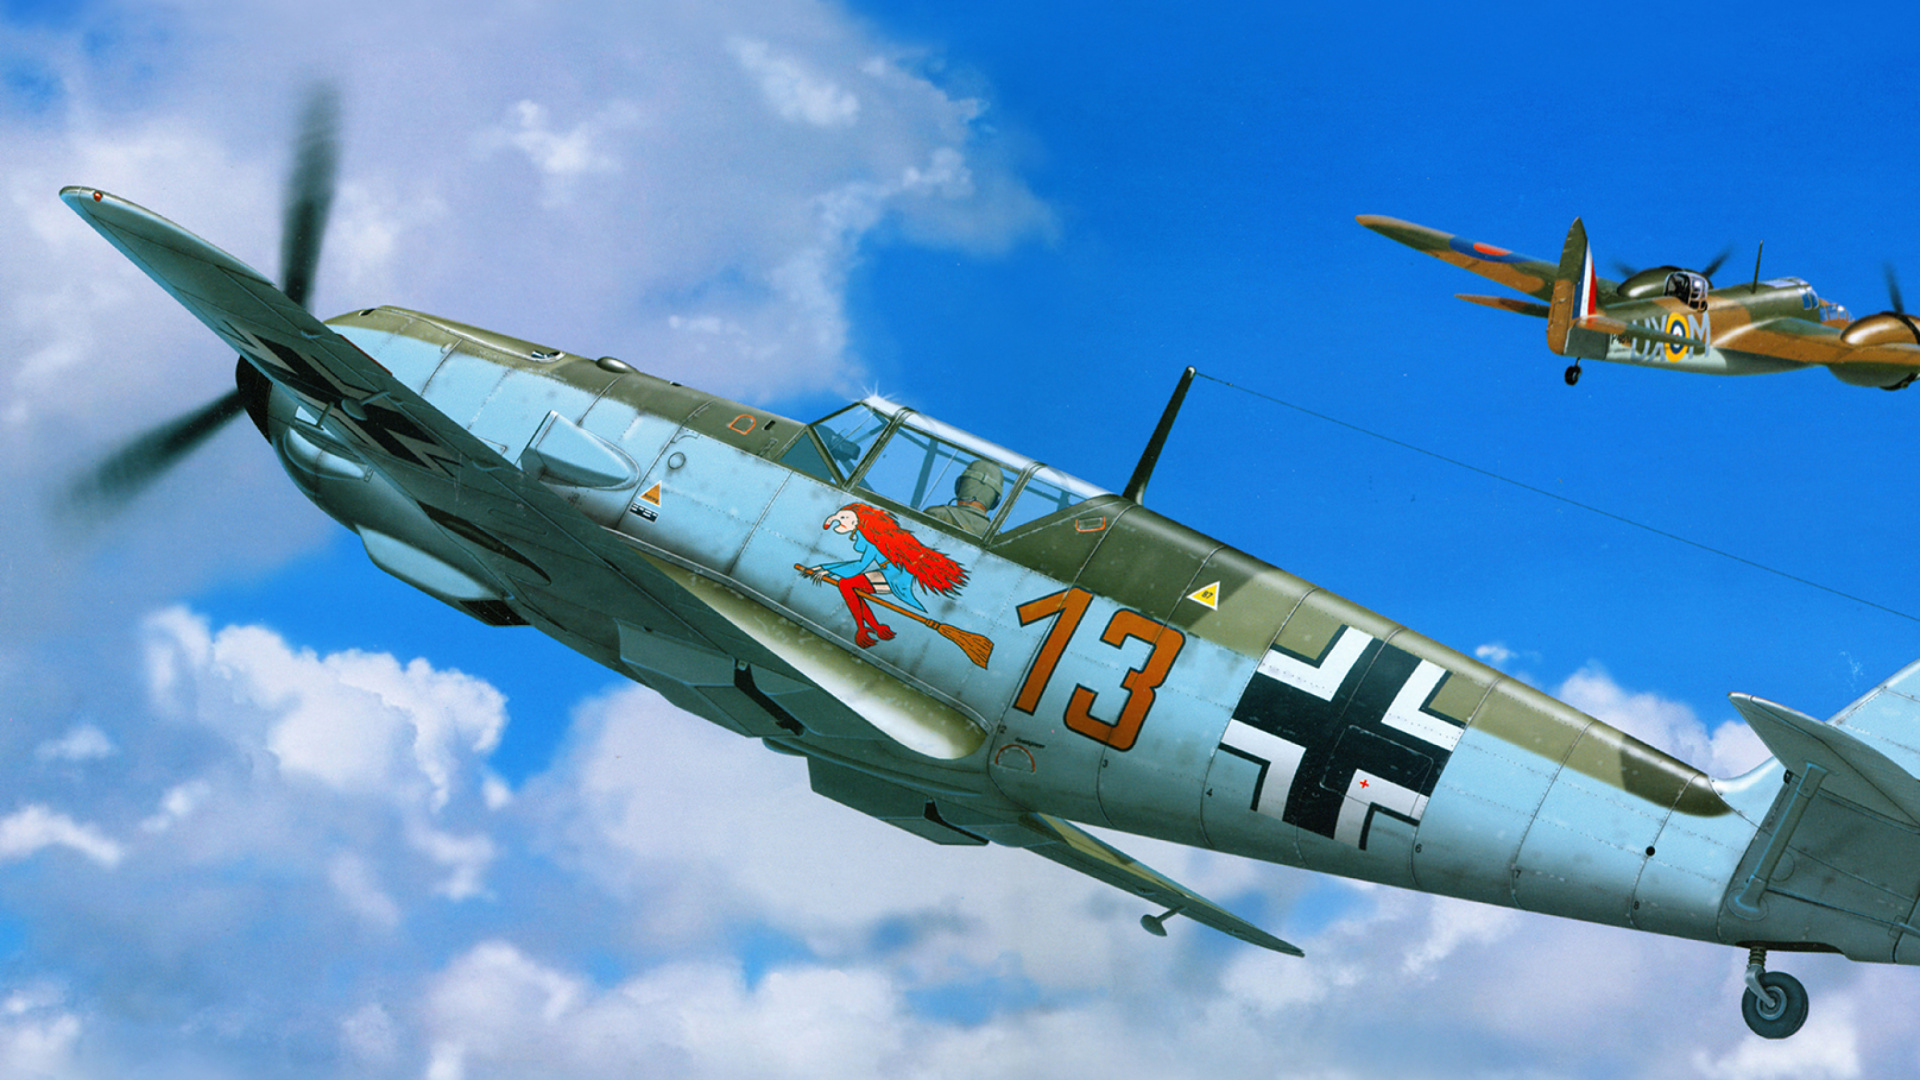 Messerschmitt Bf 109E wallpaper 1920x1080